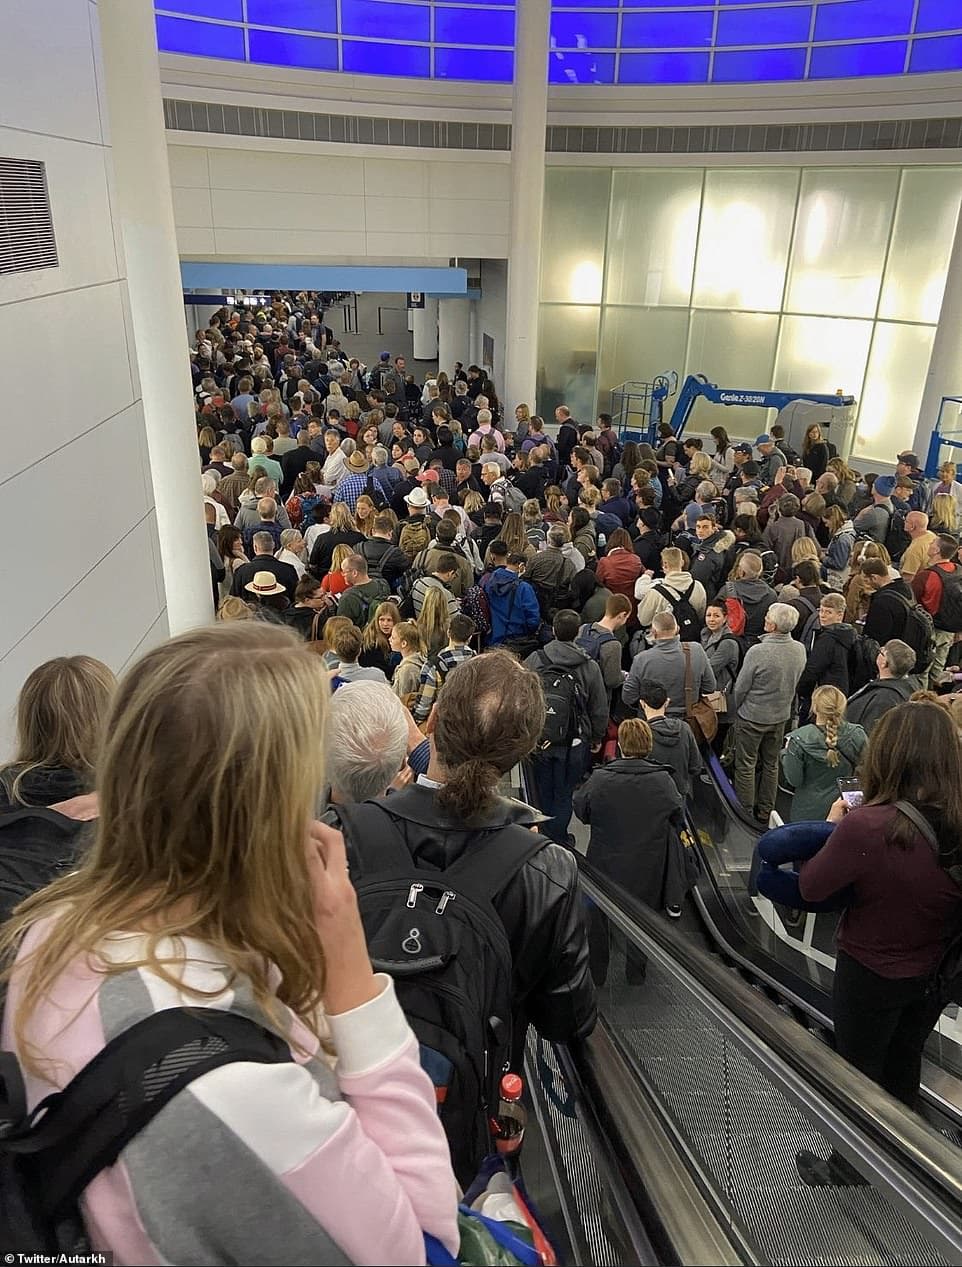 صور لا تصدق لفوضى المطارات الأمريكية بسبب المسافرين العالقين